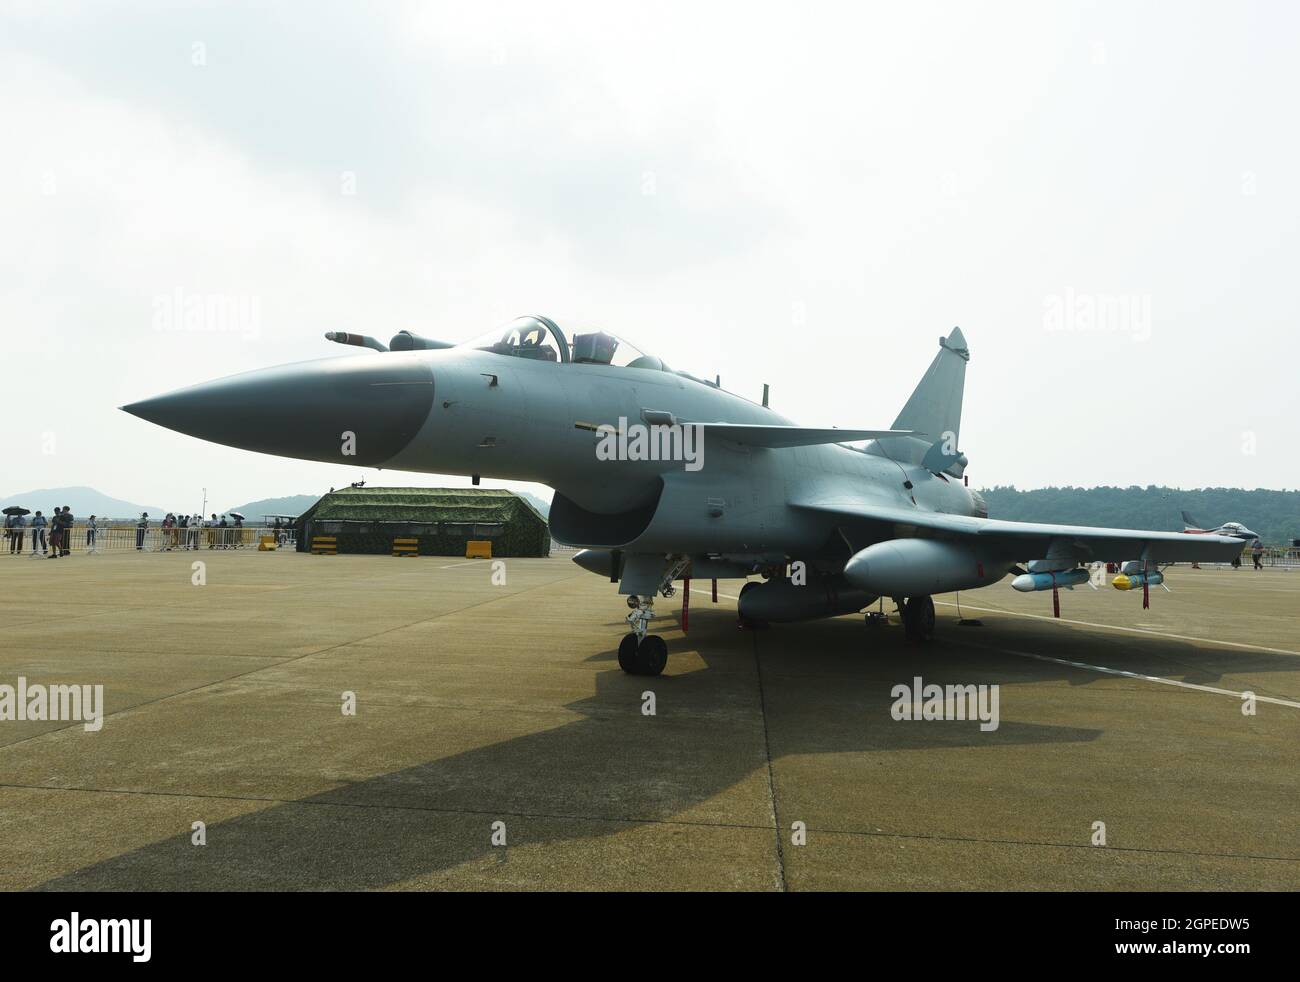 Zhuhai, Zhuhai, China. 29th de Sep de 2021. El luchador J-10C fue fotografiado en el Salón Aéreo de Zhuhai el 29 de septiembre de 2021.Como armyÃ¢â‚¬â„¢nuestro más avanzado luchador de un solo motor J-10C, debutó en el Salón Aéreo de Zhuhai y atrajo la atención de muchos aficionados militares.El caza J-10C es un caza supersónico mejorado de tercera generación desarrollado independientemente por mi país. Está equipado con avanzados sistemas de aviónica y múltiples armas aéreas avanzadas. Crédito: ZUMA Press, Inc./Alamy Live News Foto de stock